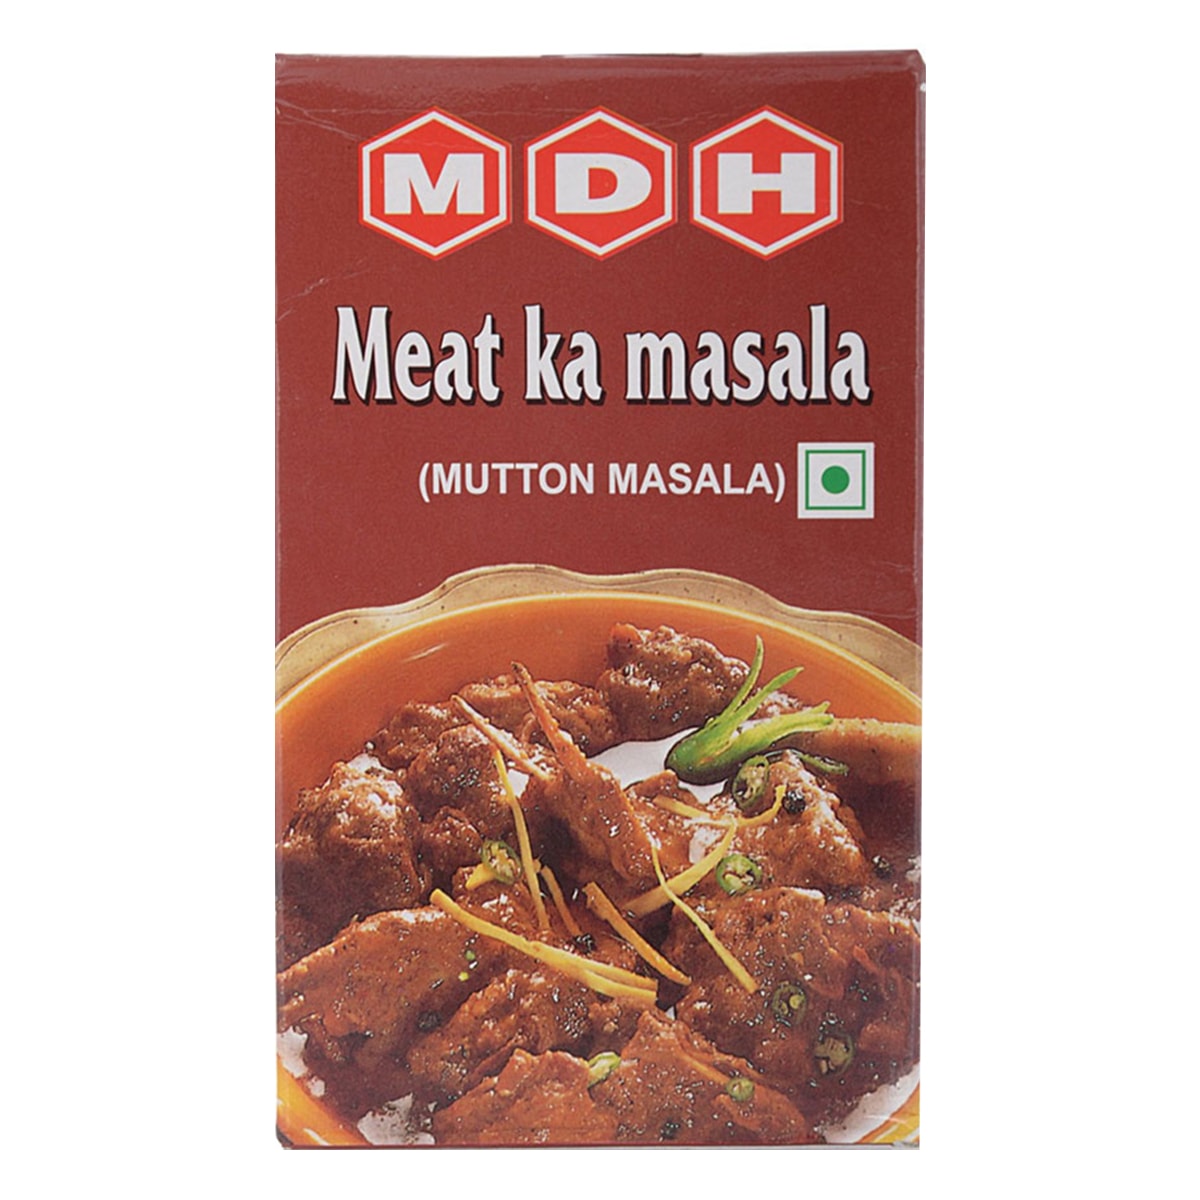 Buy MDH Meat Ka Masala (Mutton Masala) - 100 gm